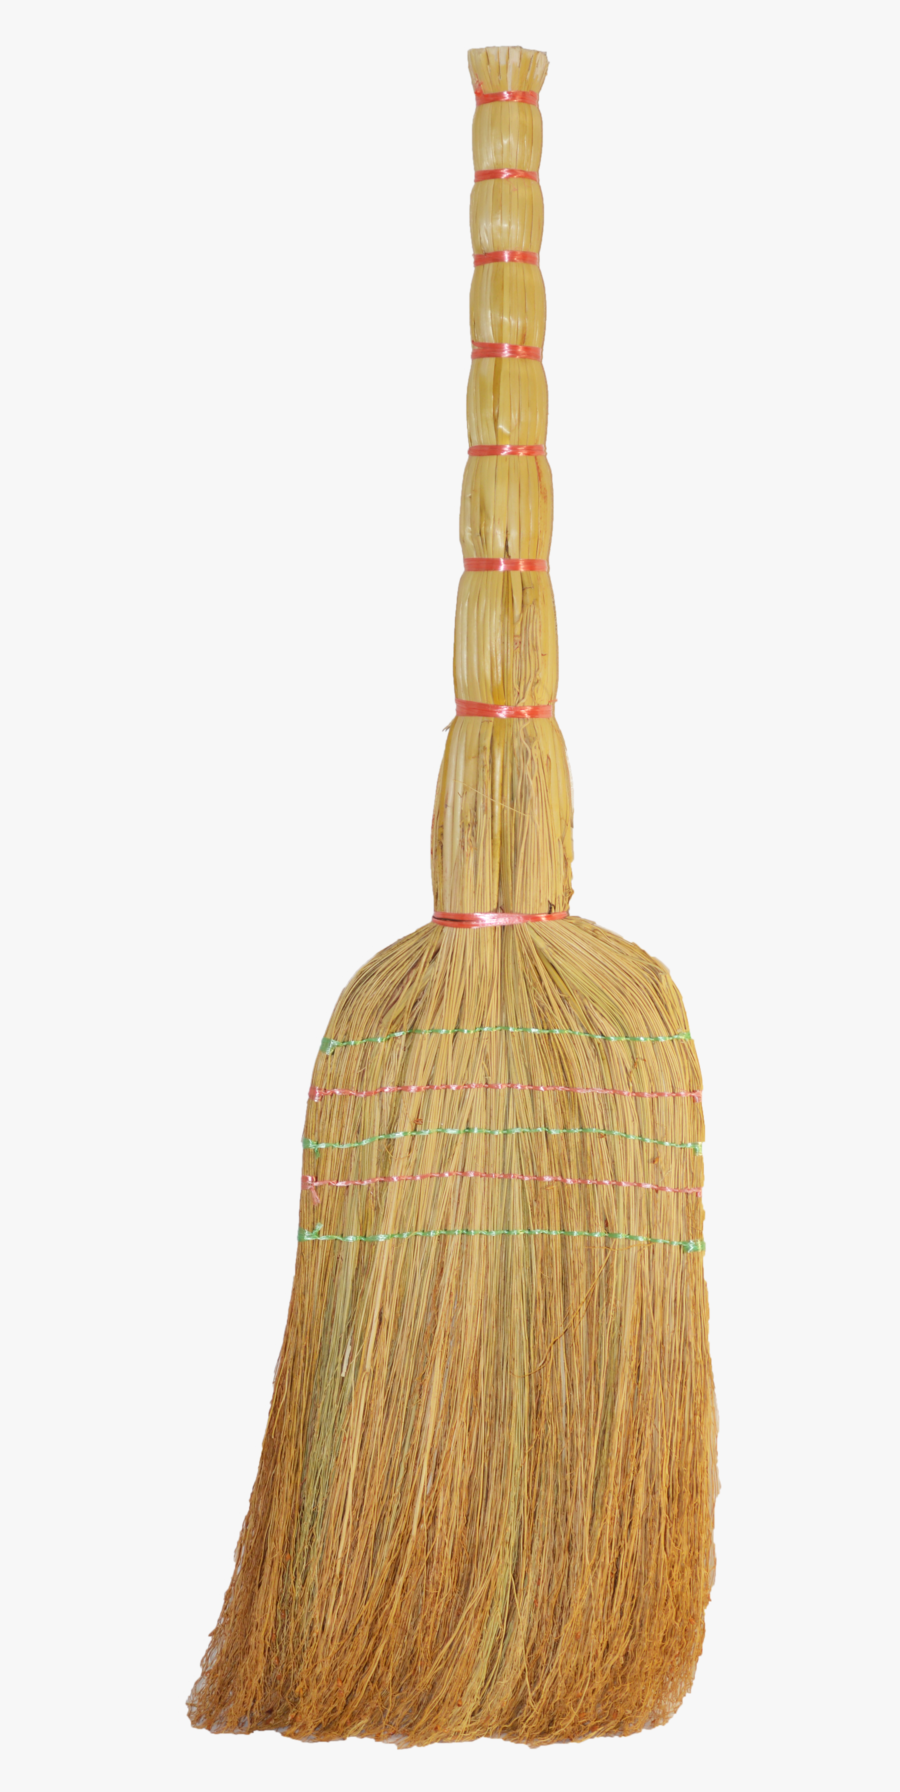 Broom Png - Wood, Transparent Clipart